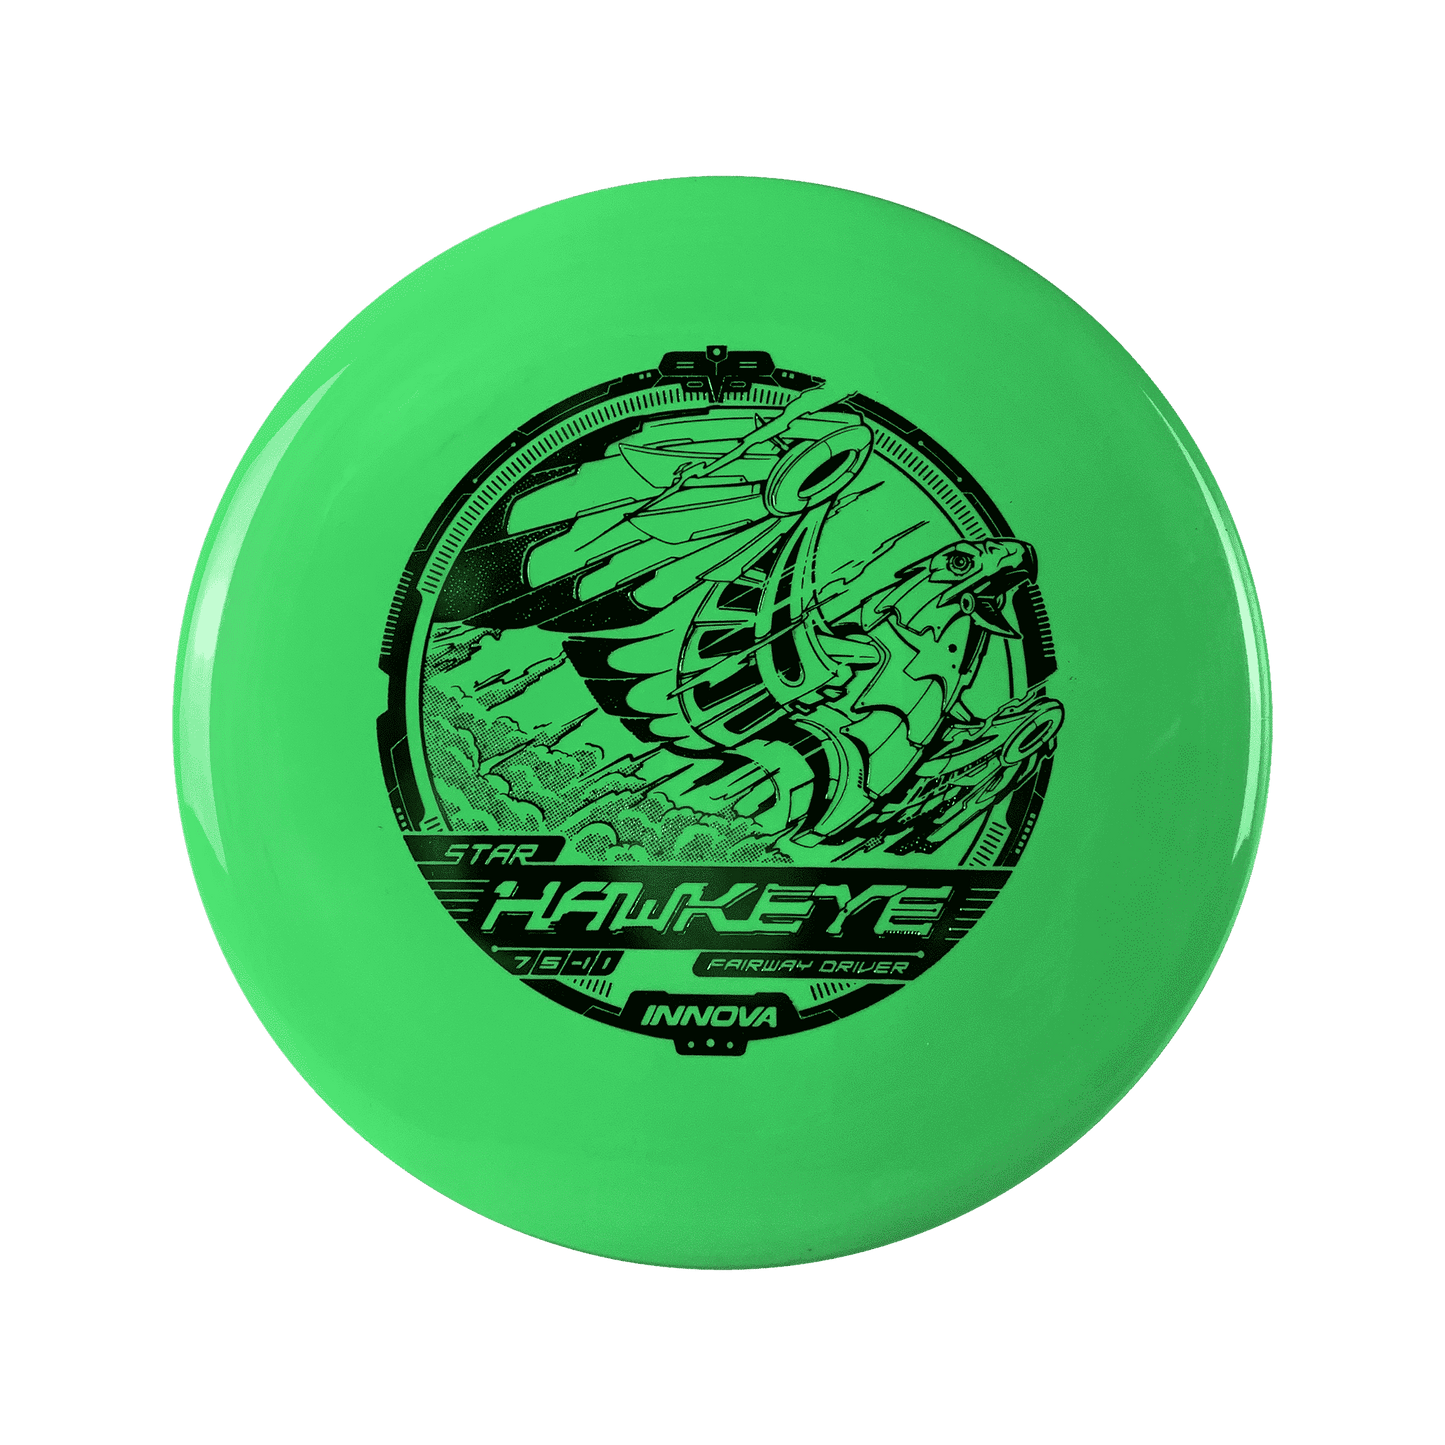 Star Hawkeye Disc Innova green 173 